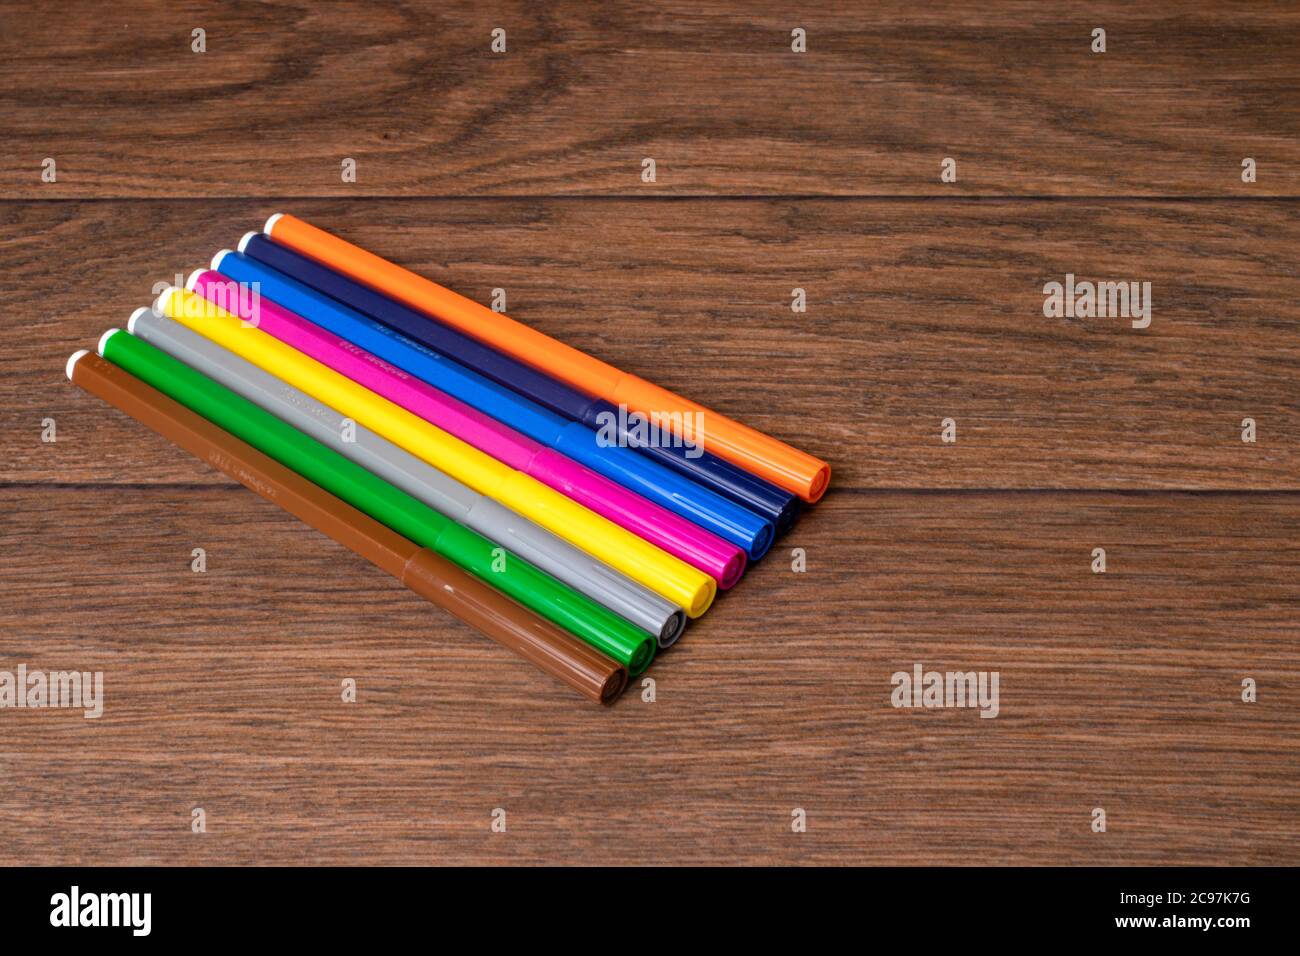 Beaucoup de stylos-feutres multicolores colorés et vibrants sur un fond en bois marron. Banque D'Images